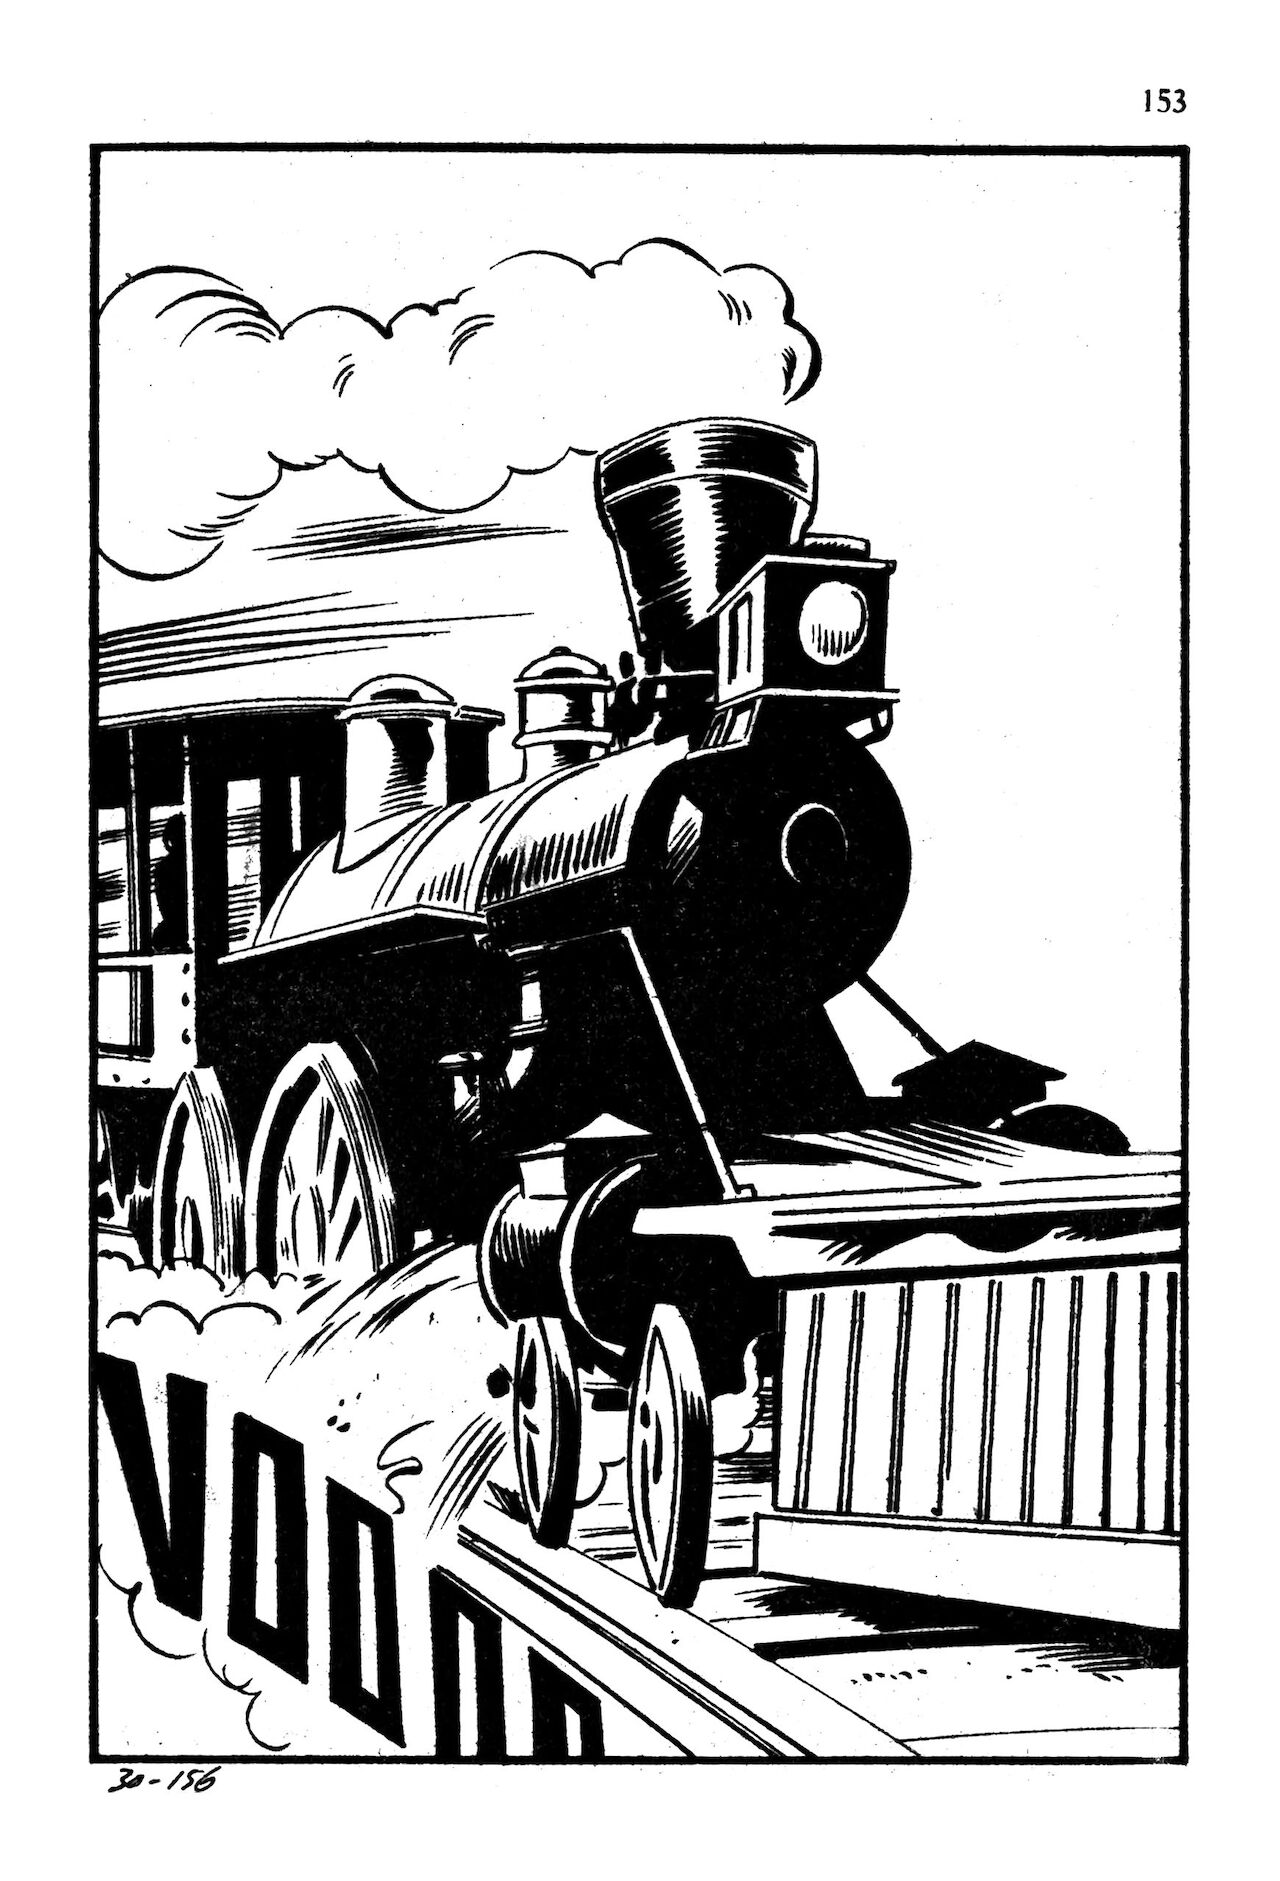 Les Grands Classiques de lEpouvante N°24 - Le train des Horreurs numero d'image 152